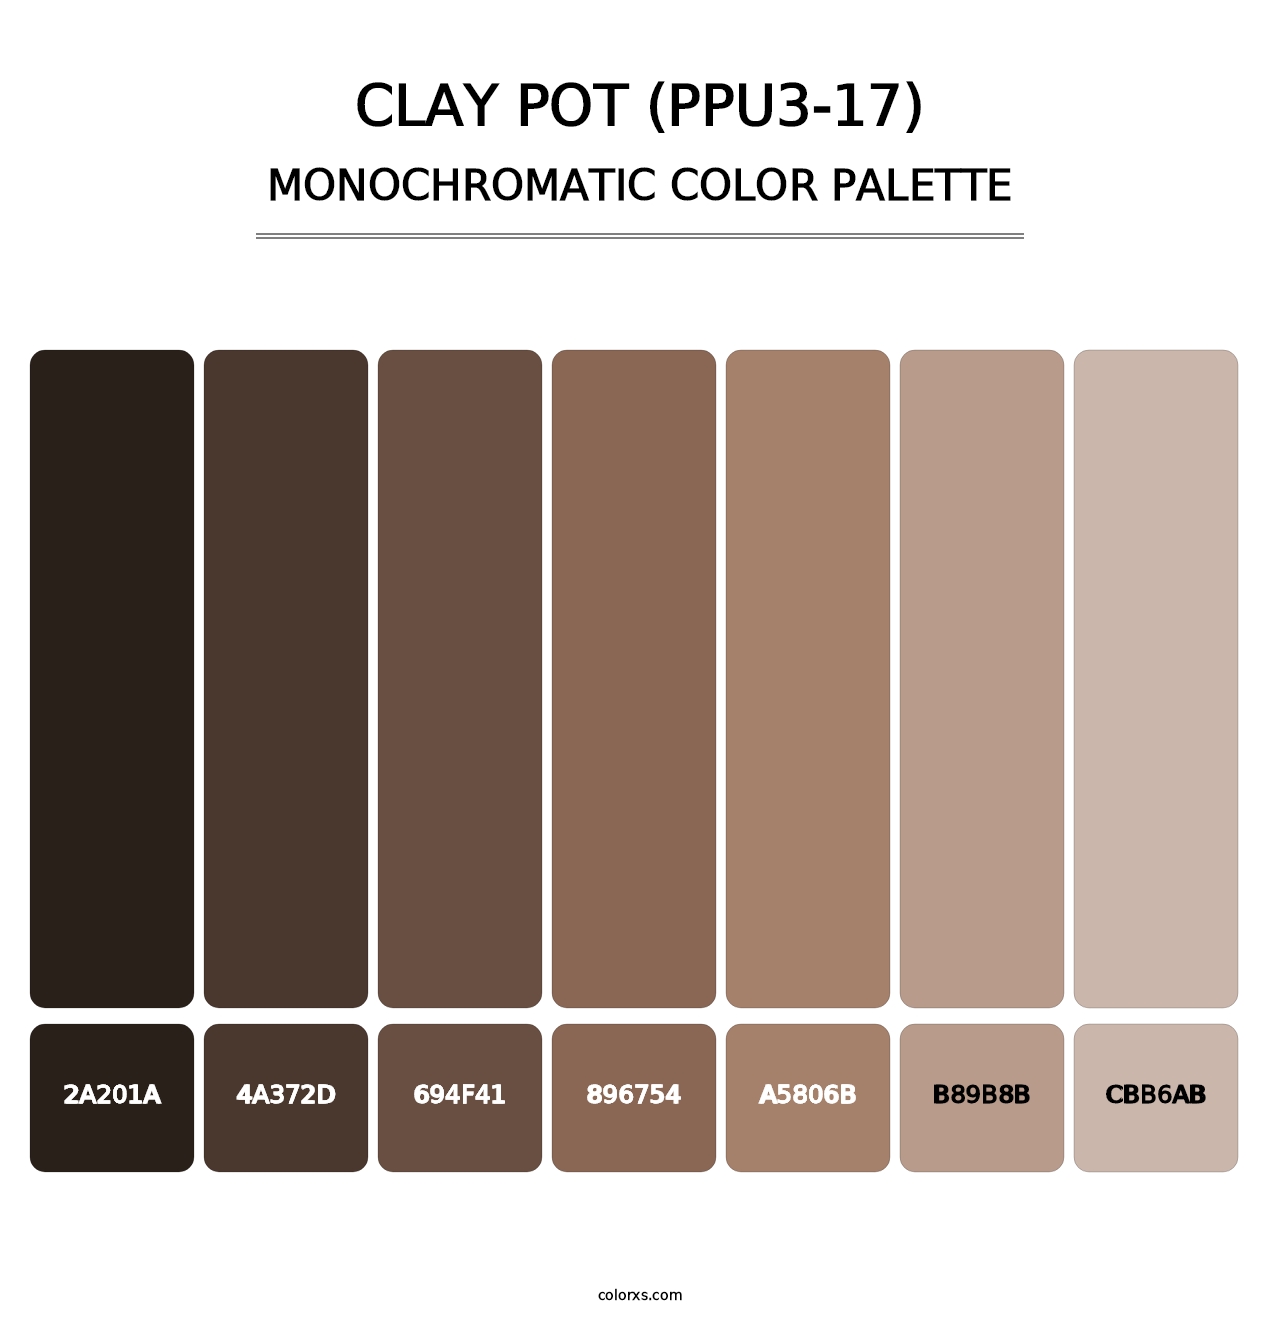 Clay Pot (PPU3-17) - Monochromatic Color Palette